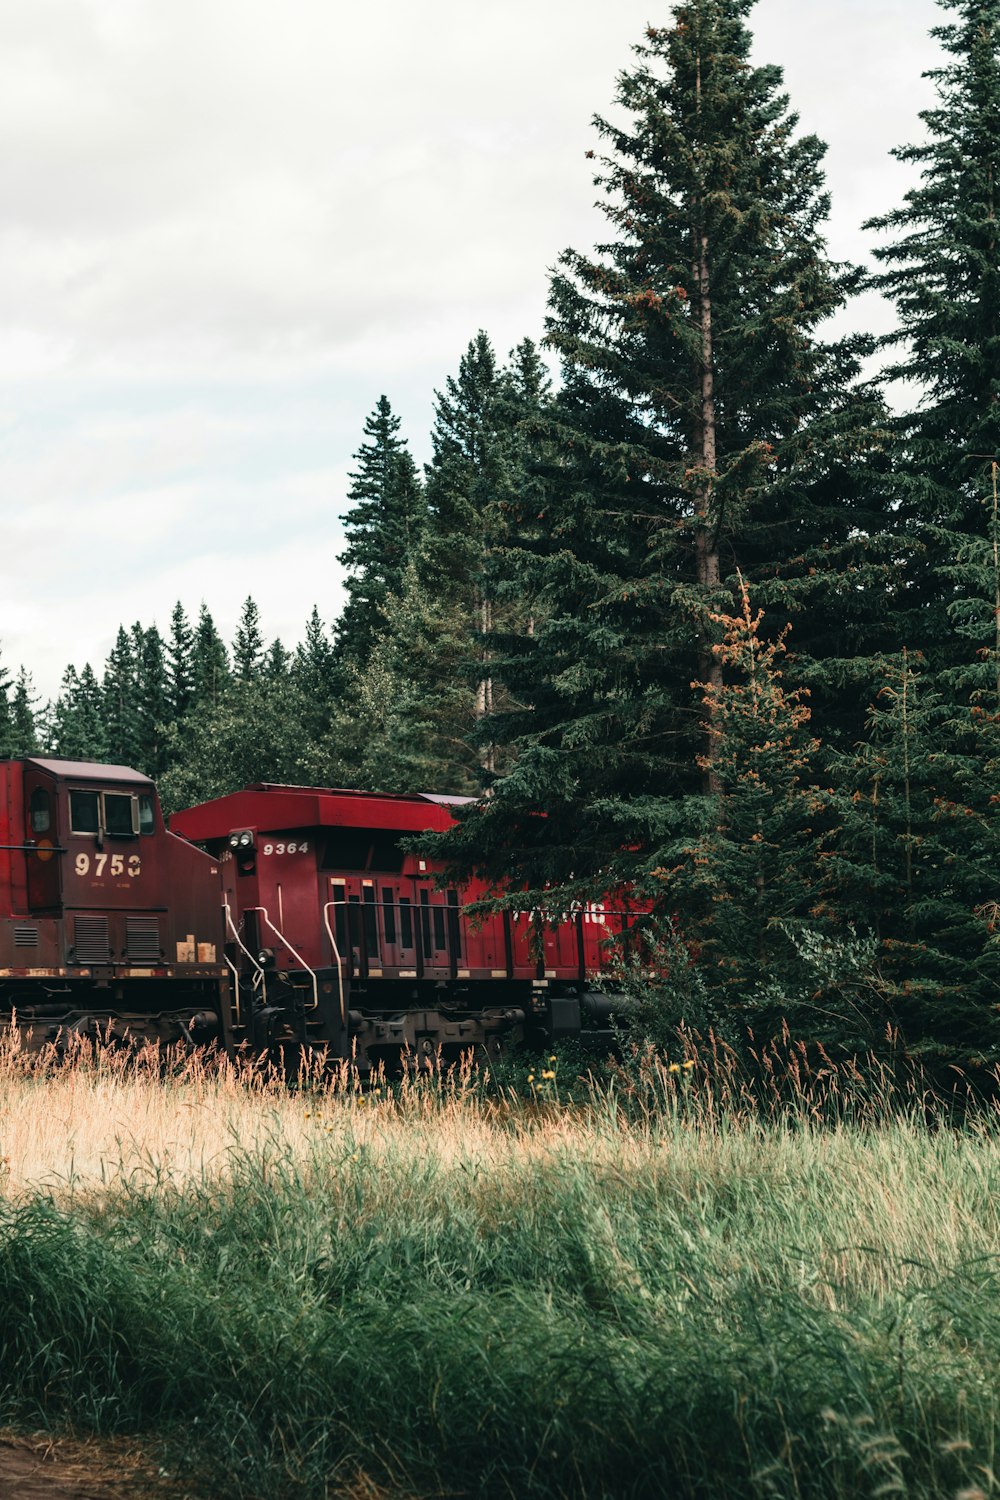 緑豊かな森の中を走る赤い列車